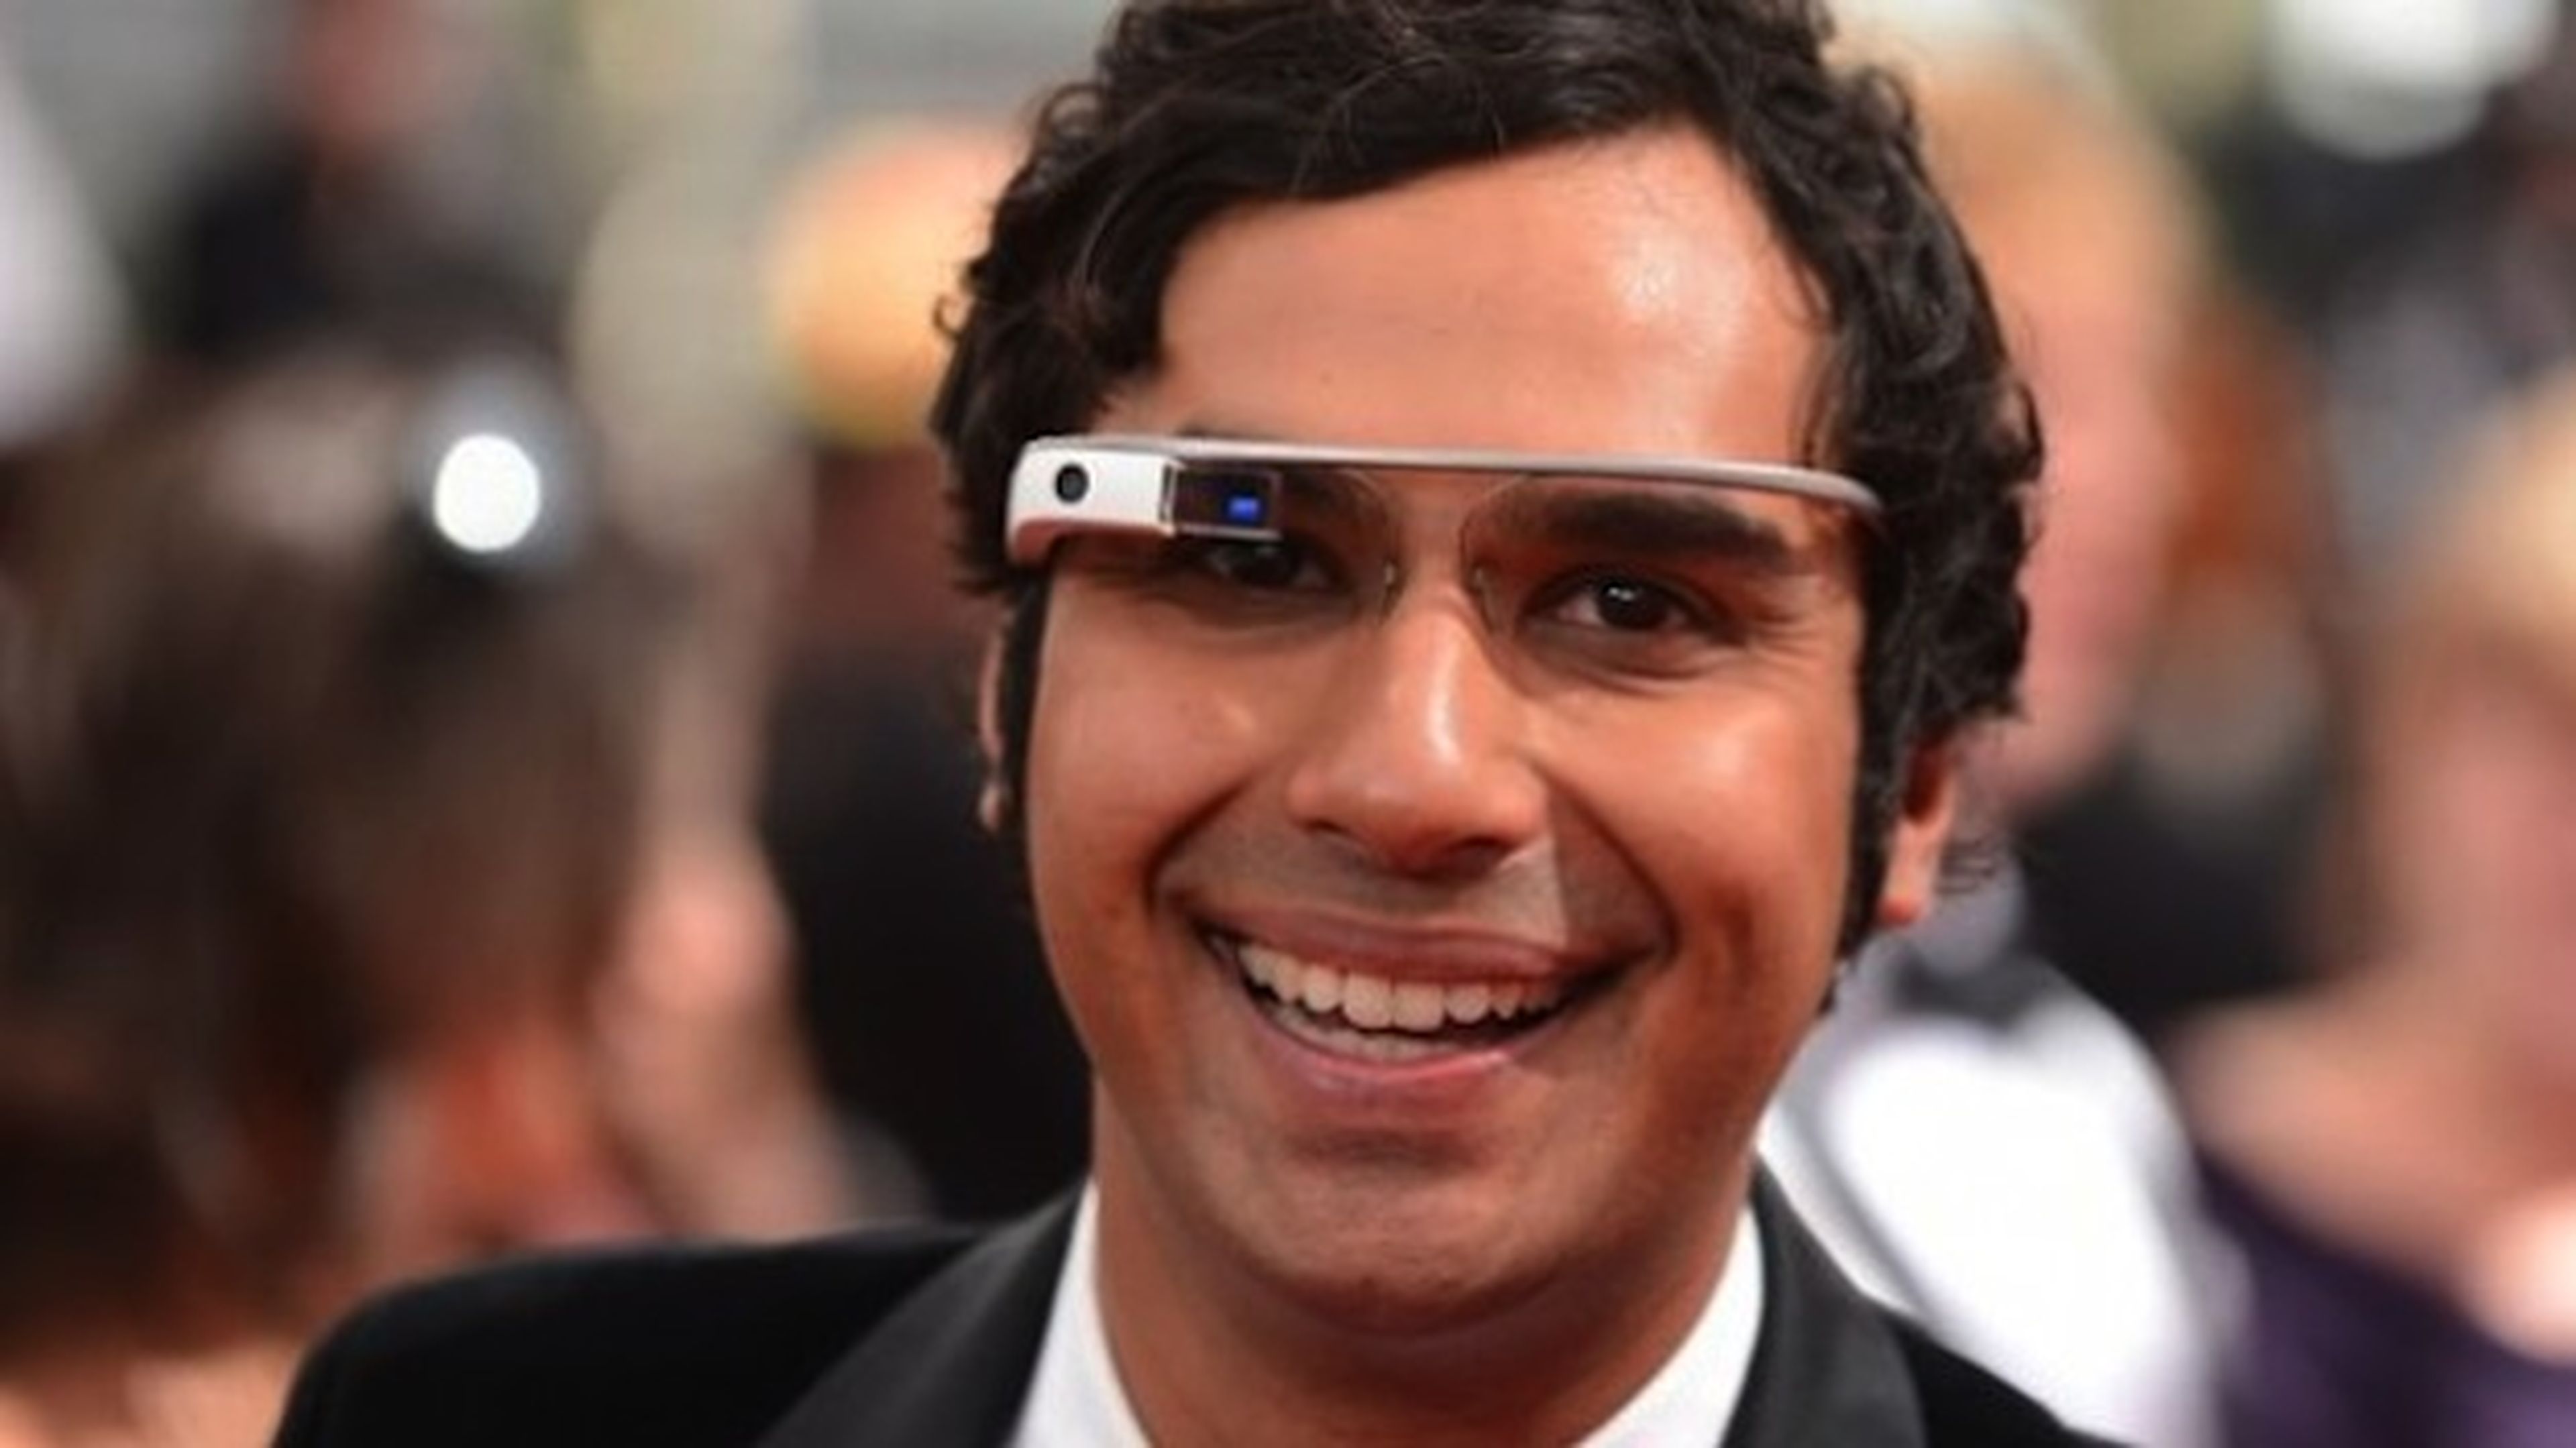 Google Glass prohibidas en algunos cines de EE.UU.